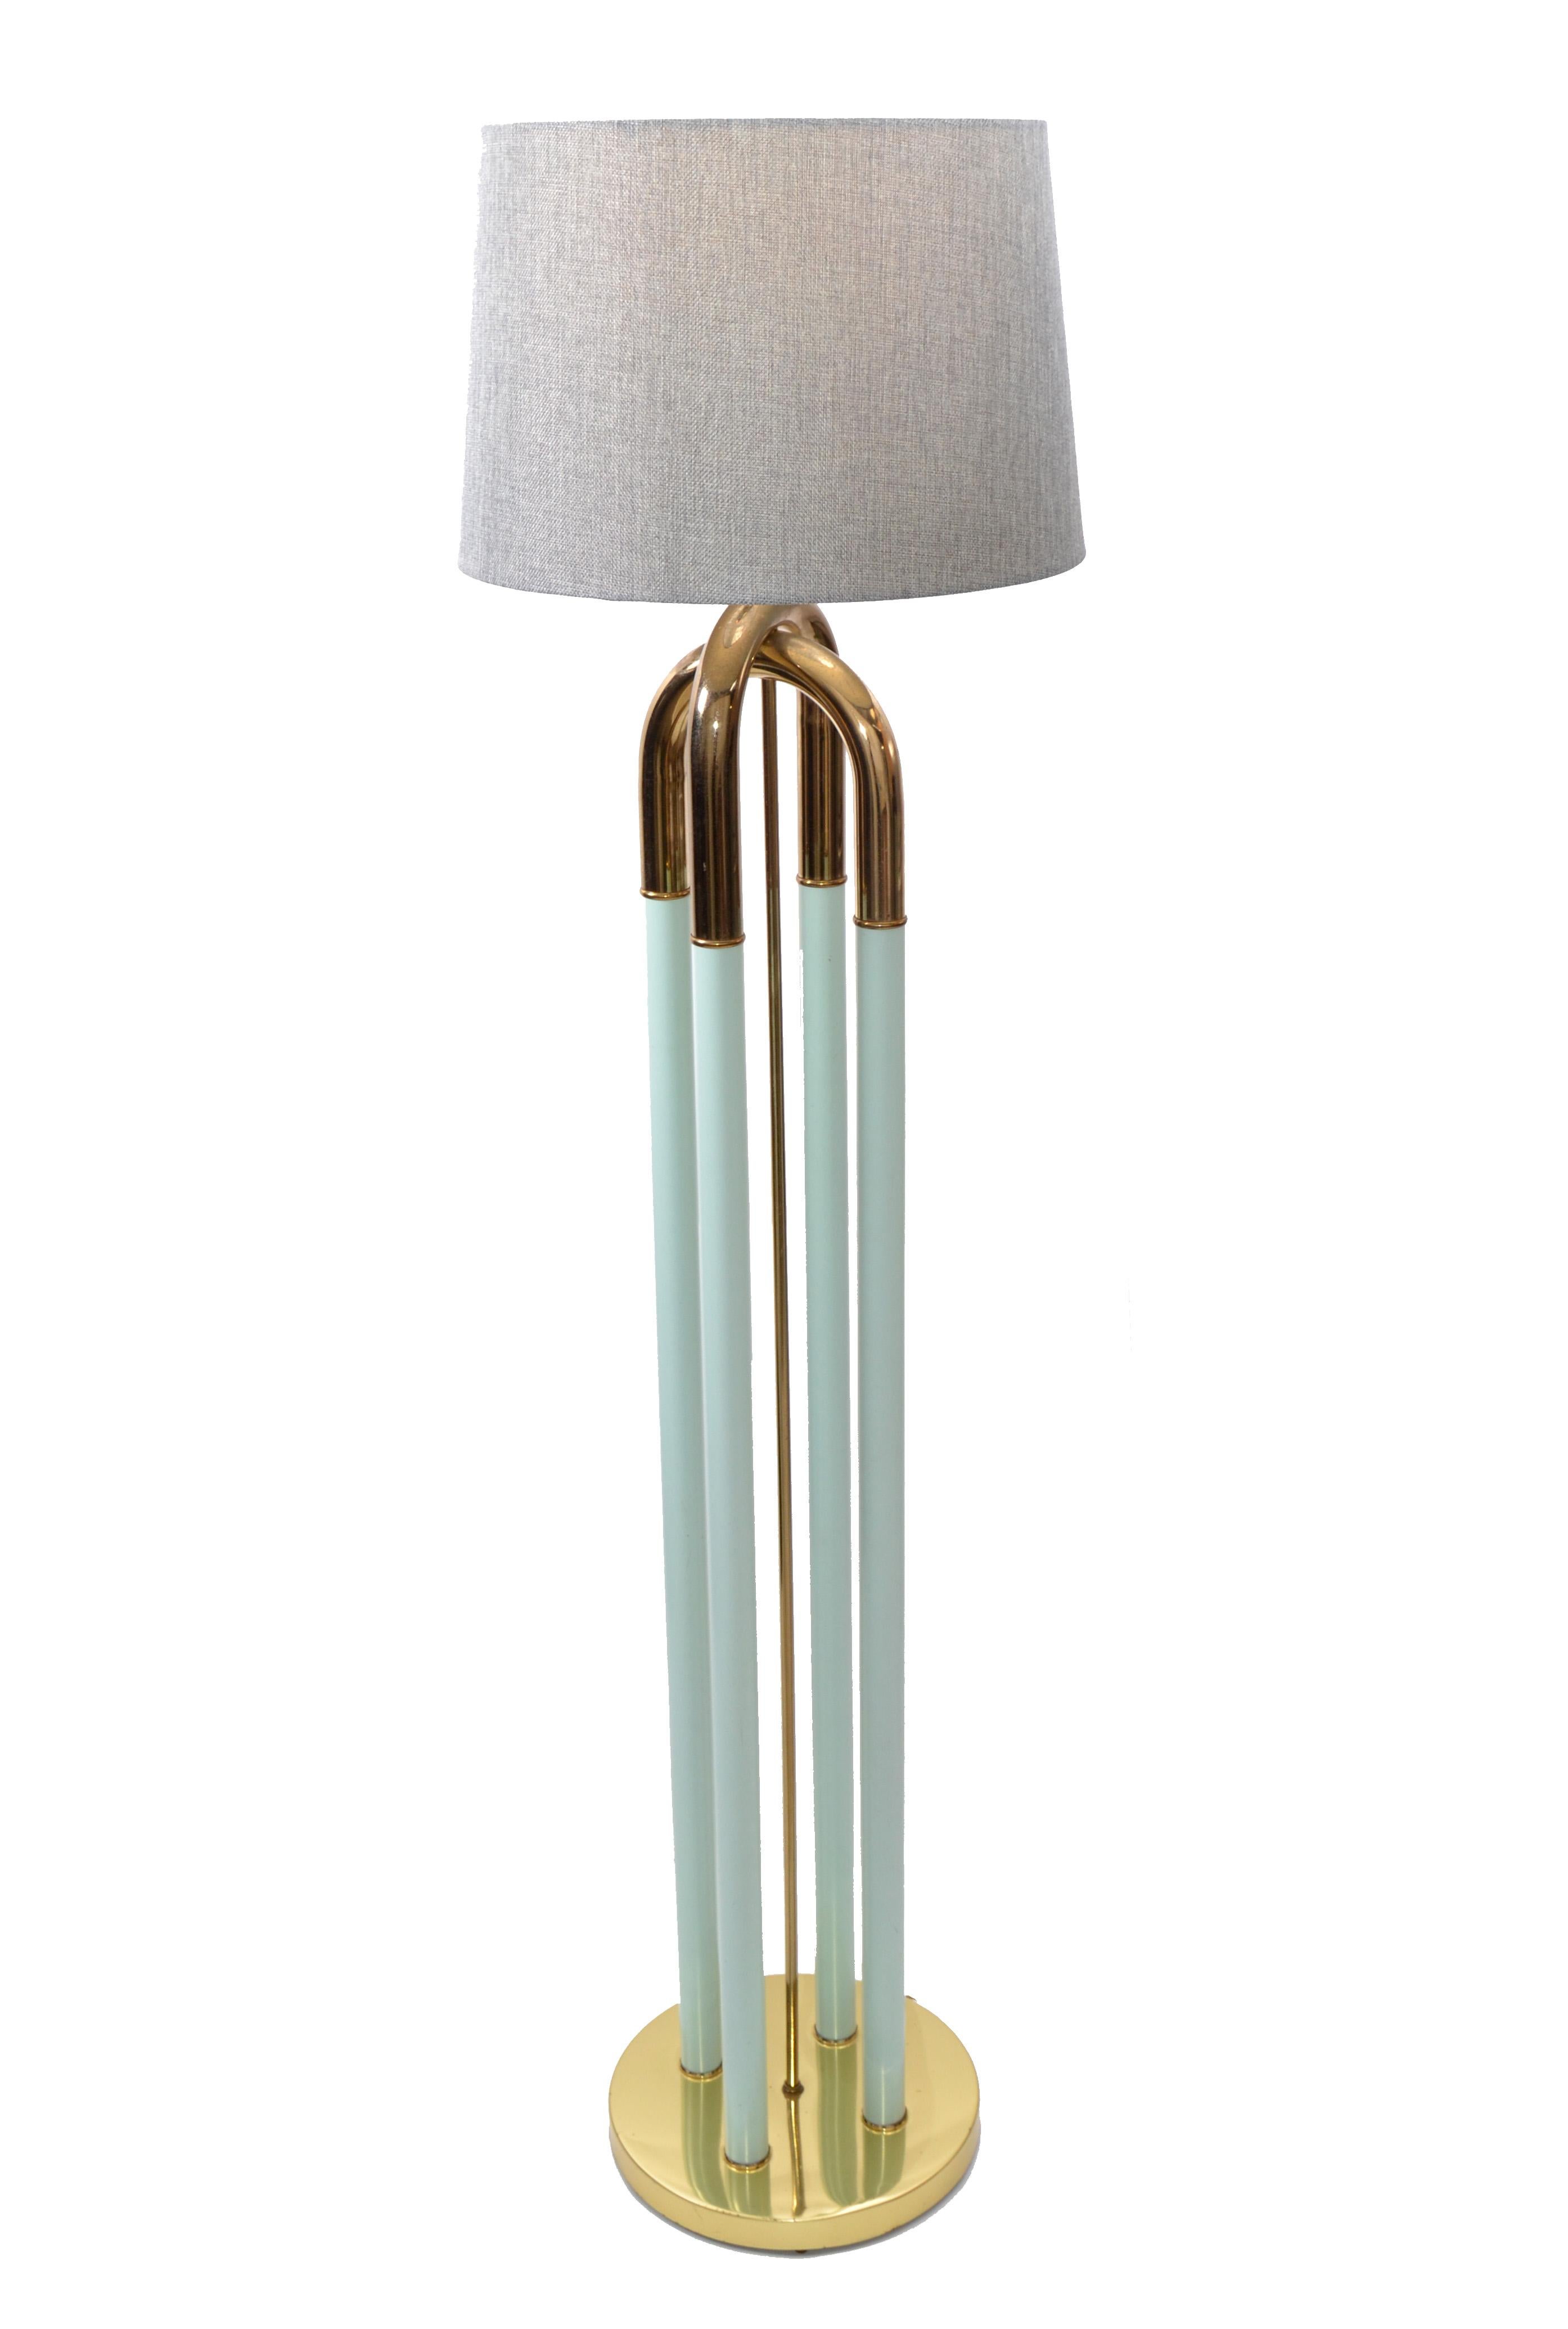 Emaille in Türkis und Messing plattiert Stehlampe Mid-Century Modern.
Geeignet für eine Glühbirne mit max. 75 Watt. Die LED-Lampe funktioniert perfekt.
Kein Schatten.